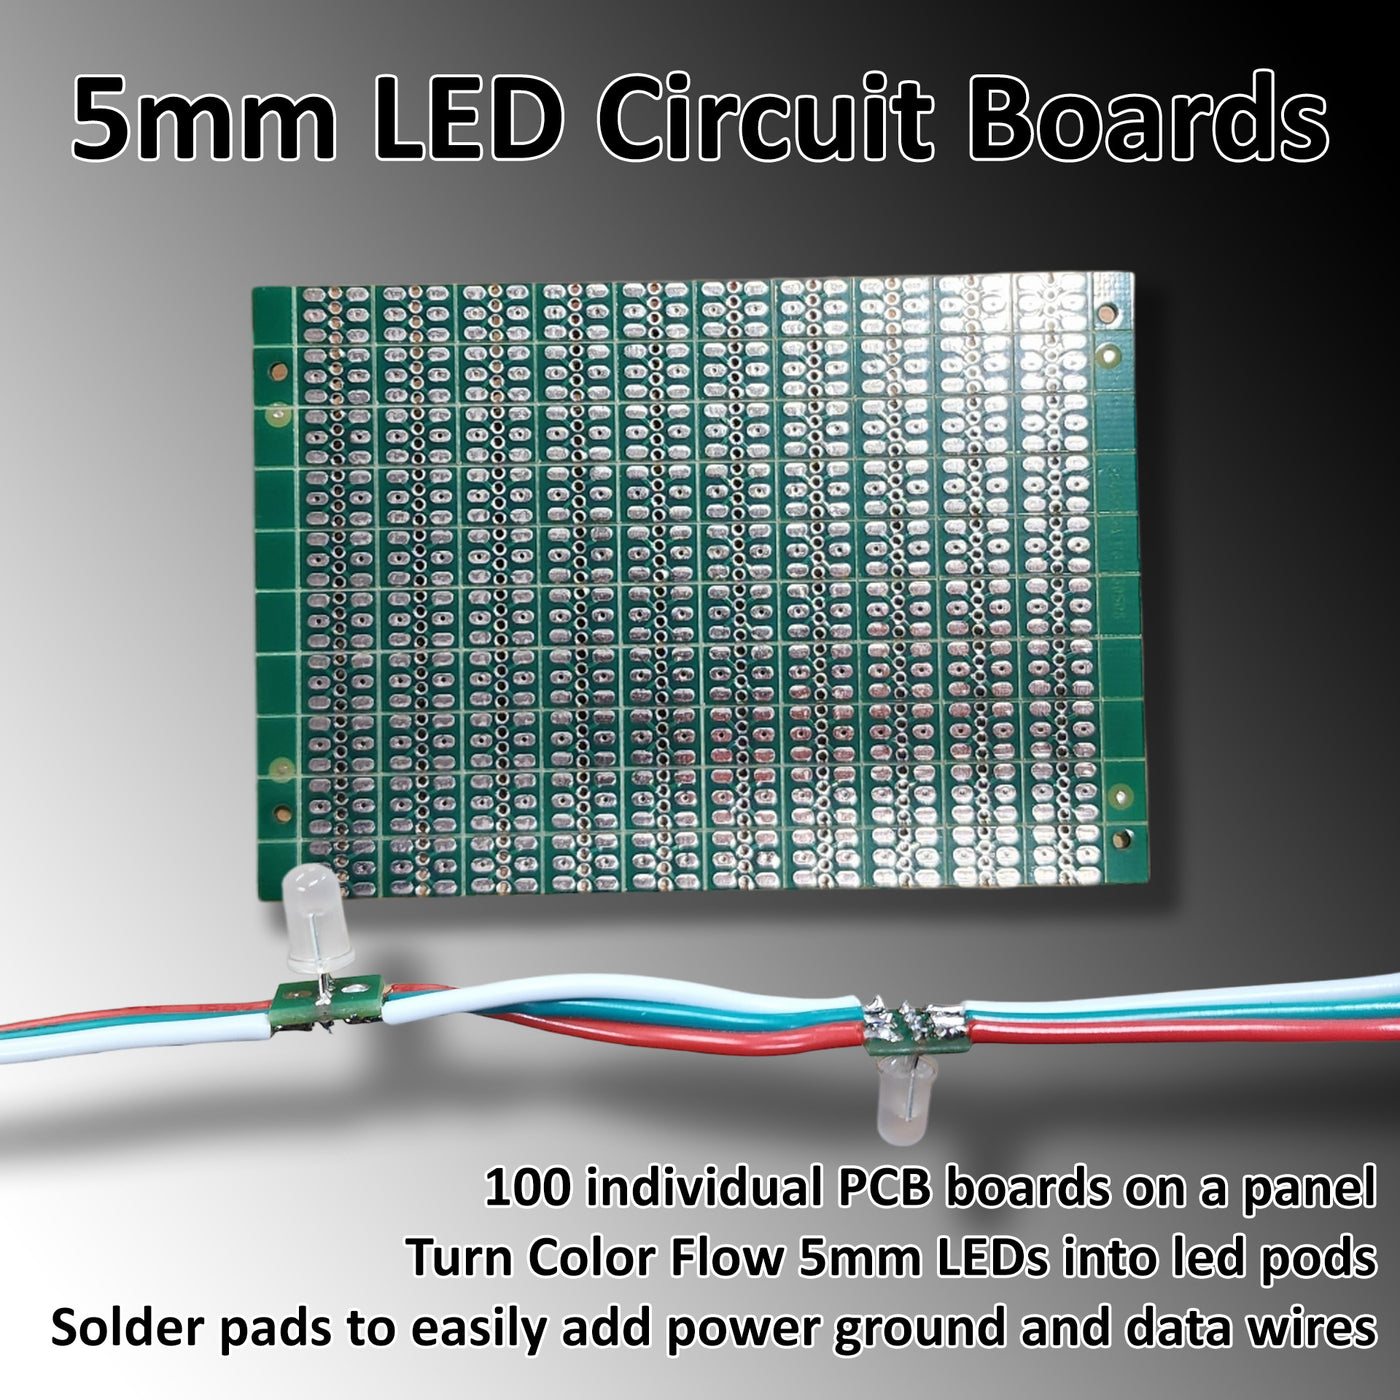 Color Flow 5mm PCB Panels - 100pcs